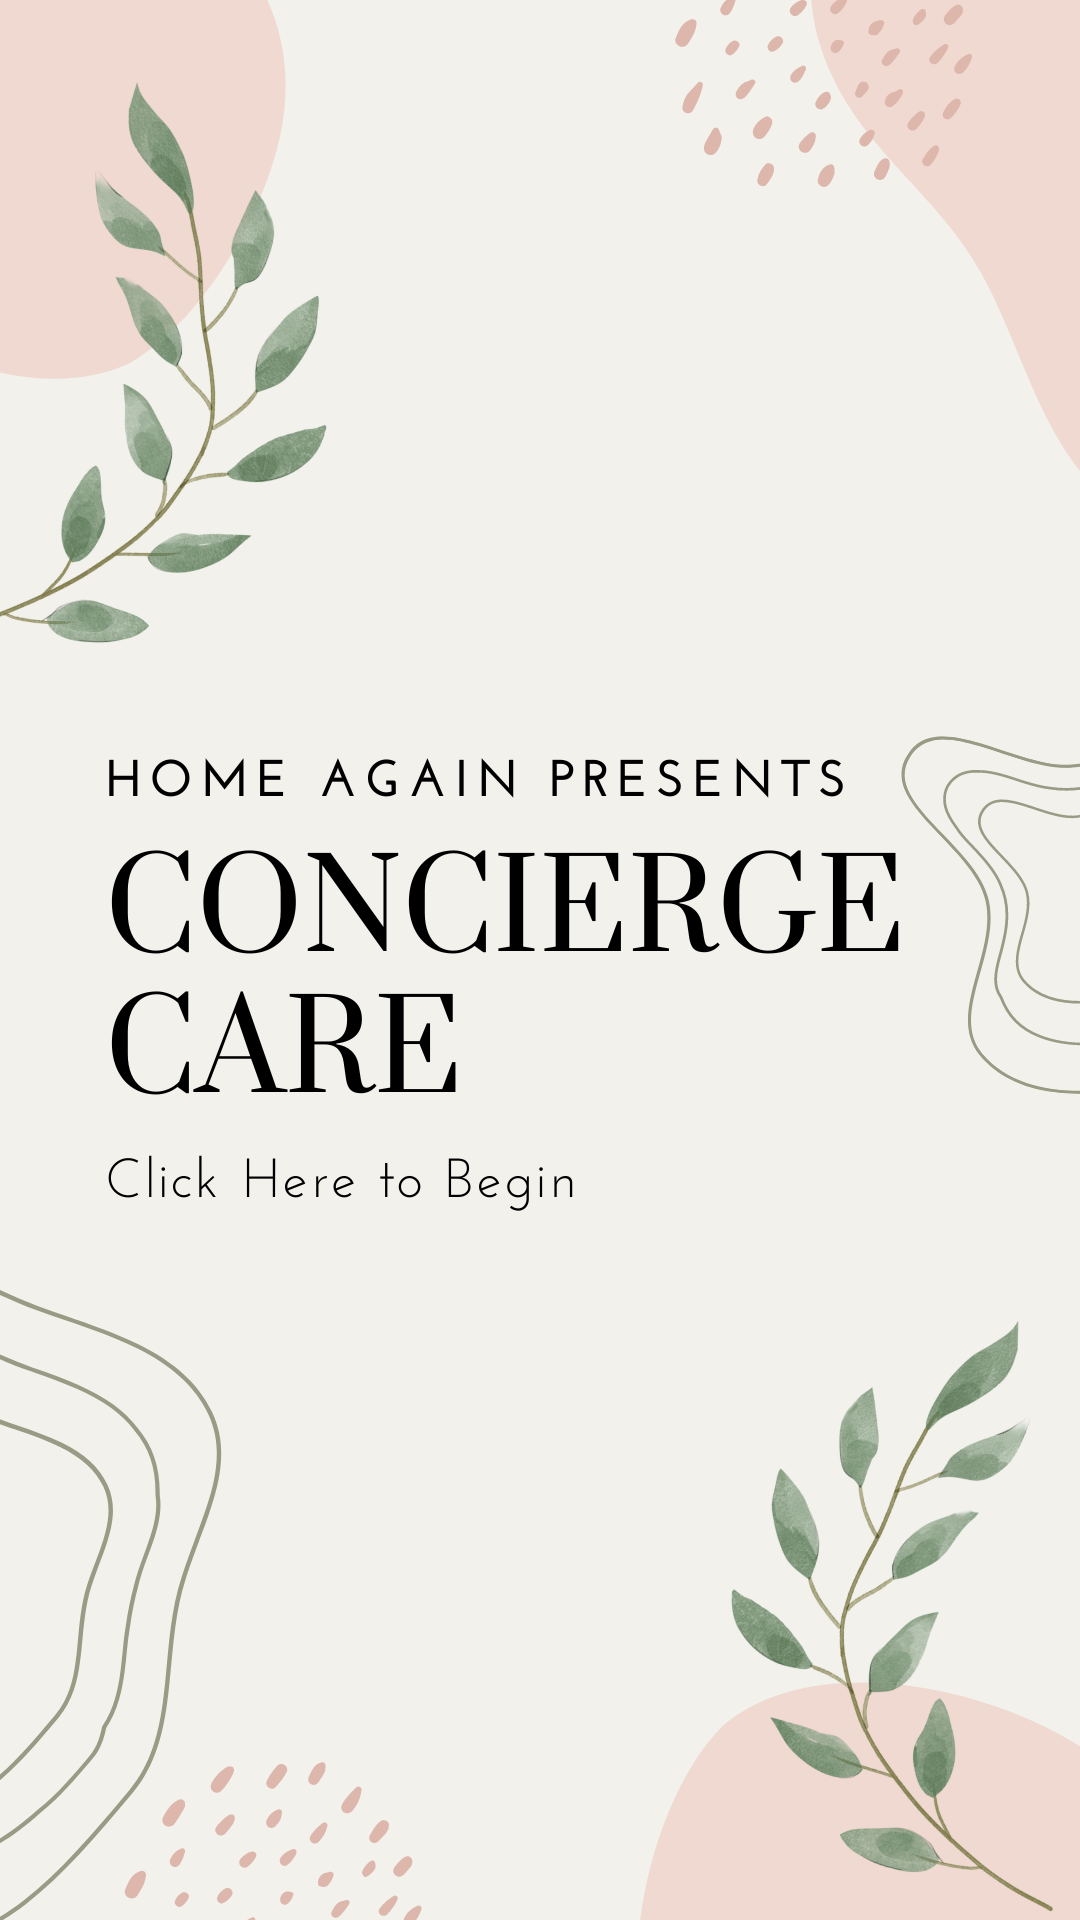 Invitation to Home Again's Concierge Care service